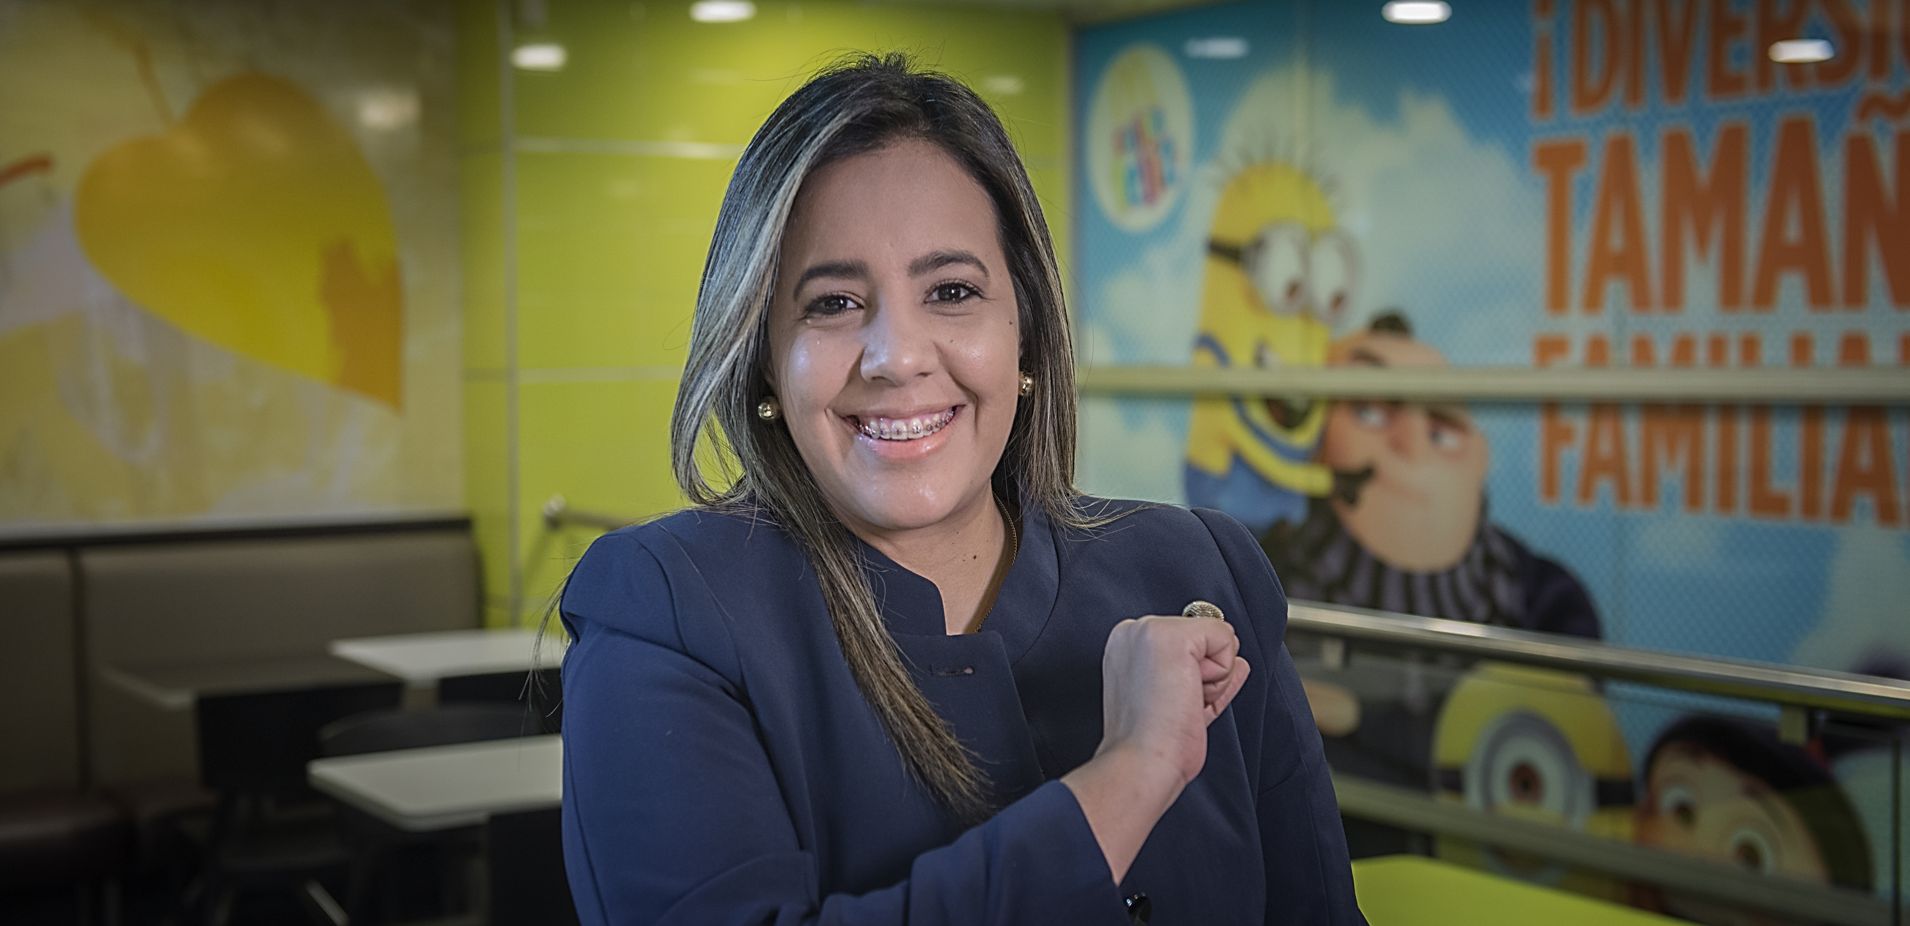 [Venezuela] McDonald’s ofrece 100 empleos formales para jóvenes venezolanos sin requerir experiencia previa